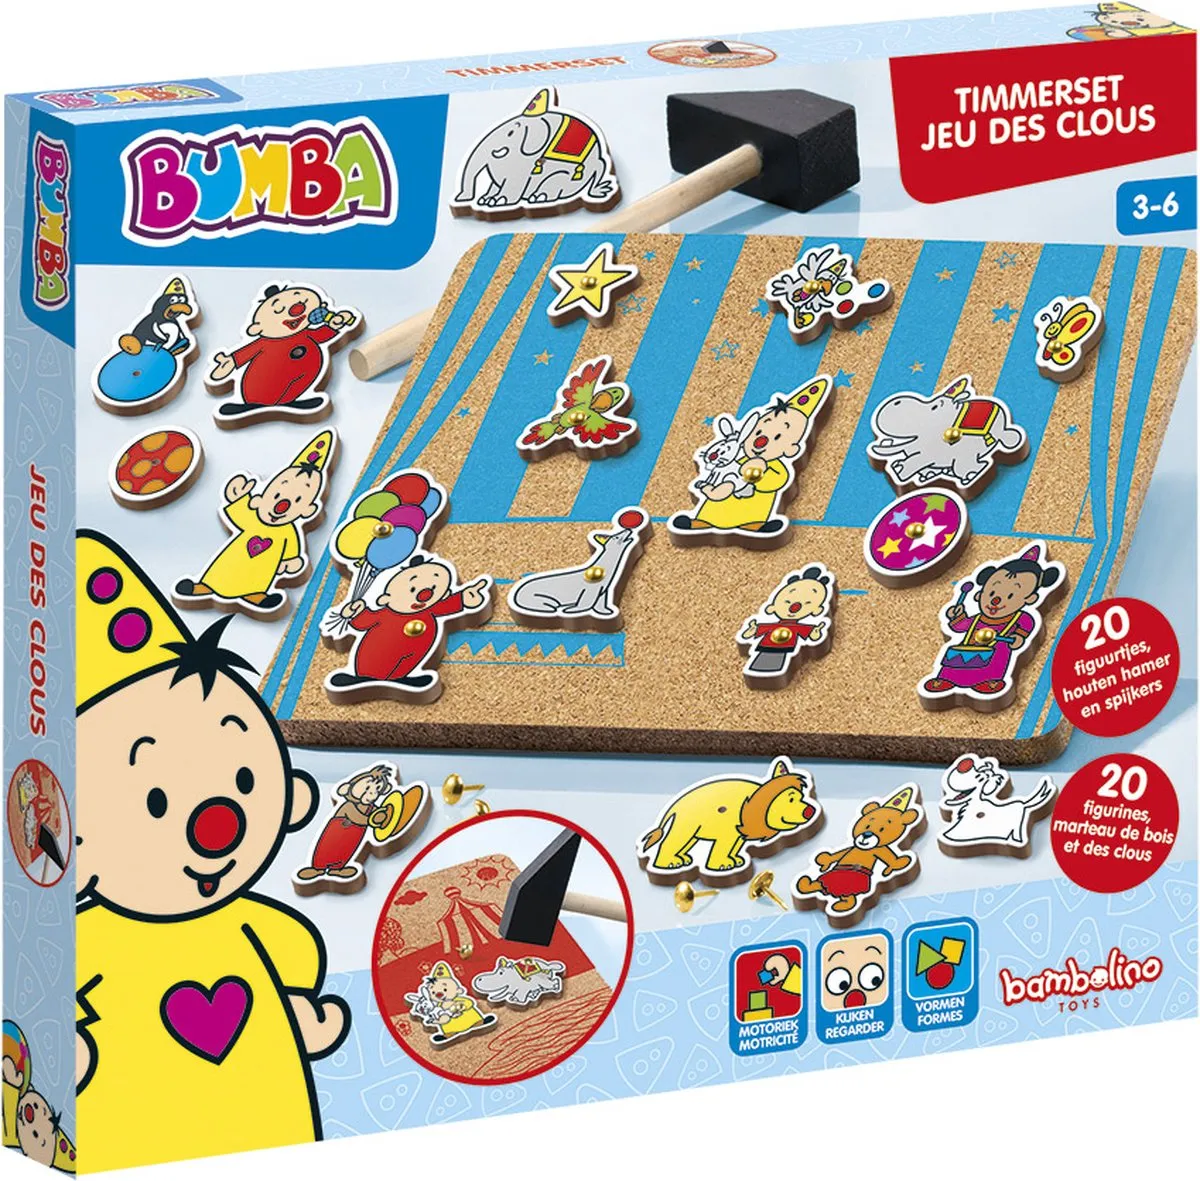 Bambolino Toys hamertje tik Bumba hamerspel met circus figuren - leren timmeren - educatief speelgoed speelgoed